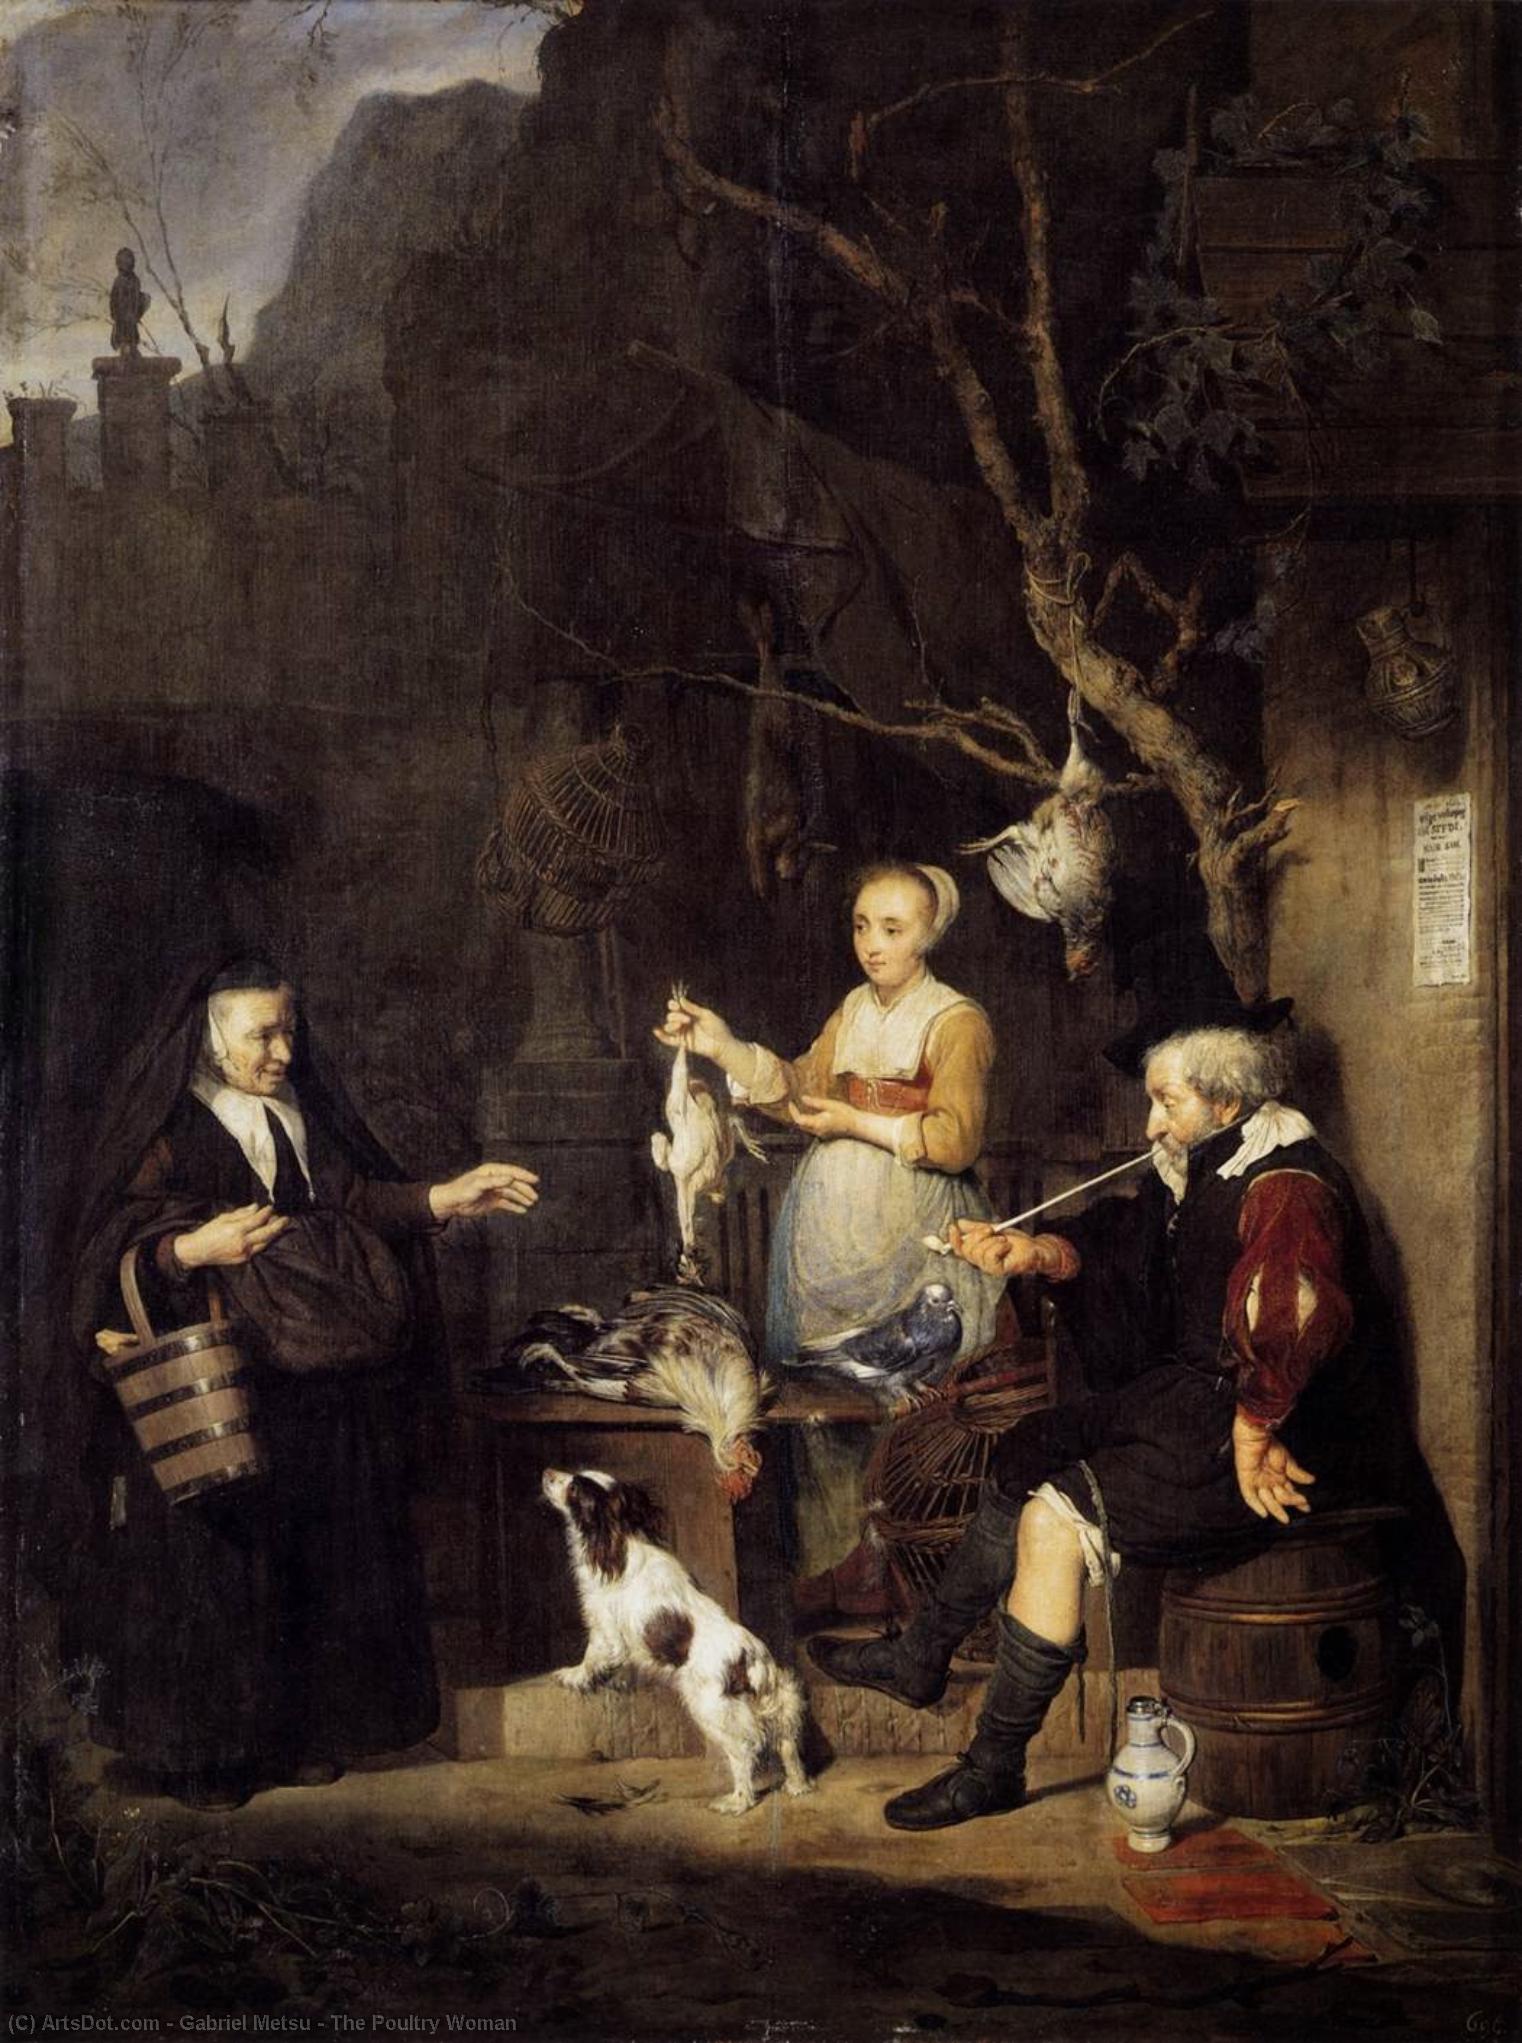 Metsu 1662 Jeune femme vendant de la volaille Gemaldegalerie Alte Meister Dresde